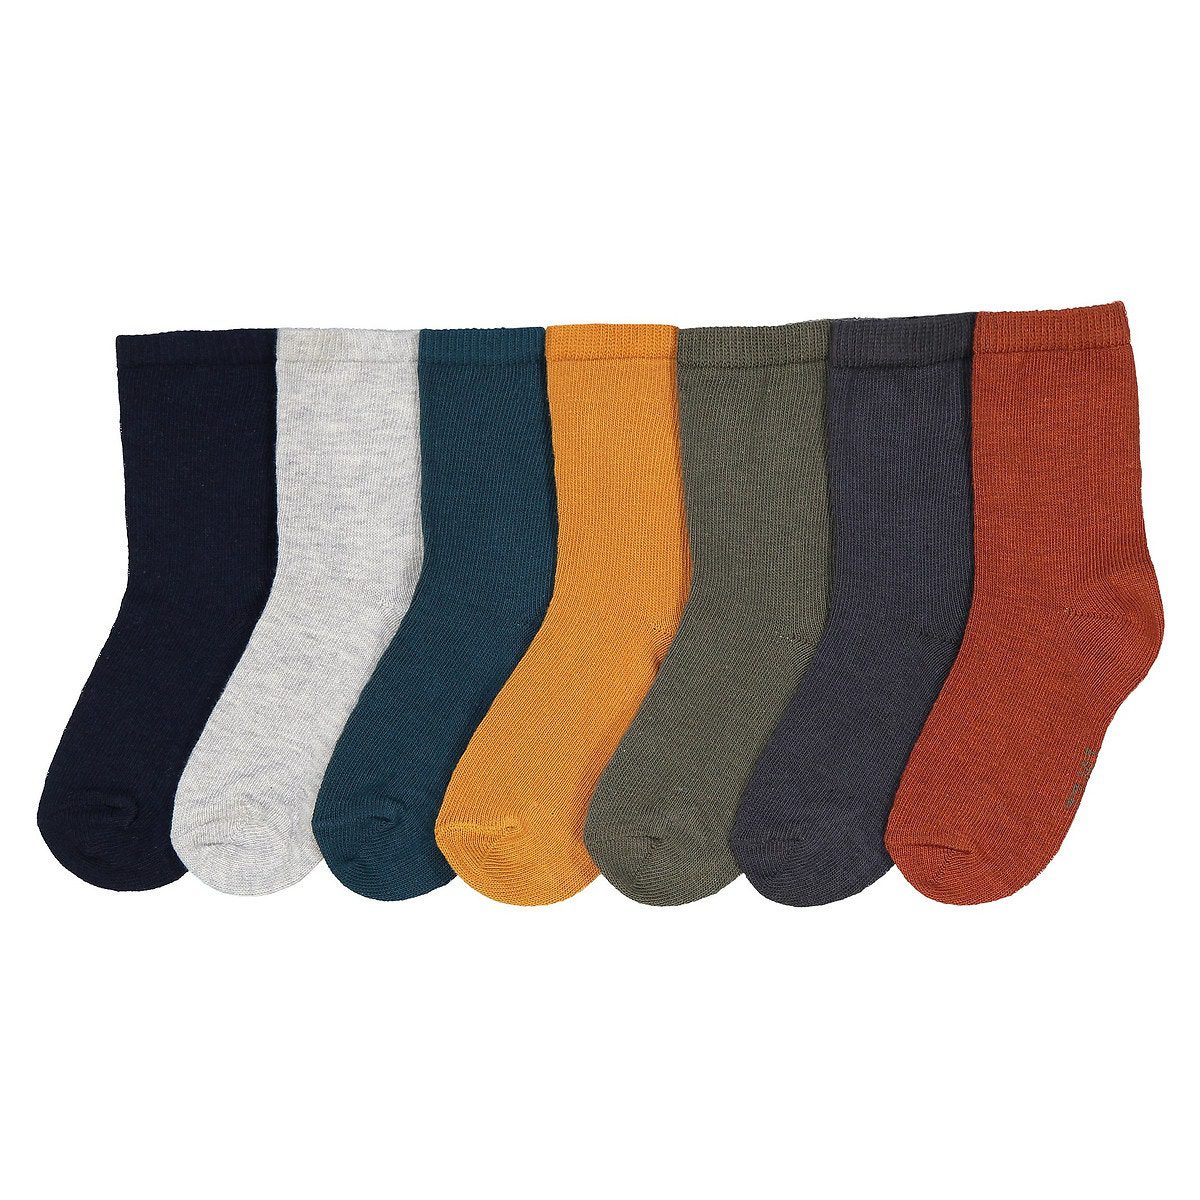 Σετ 7 ζευγάρια μονόχρωμες κάλτσες Διαφορα Χρωματα